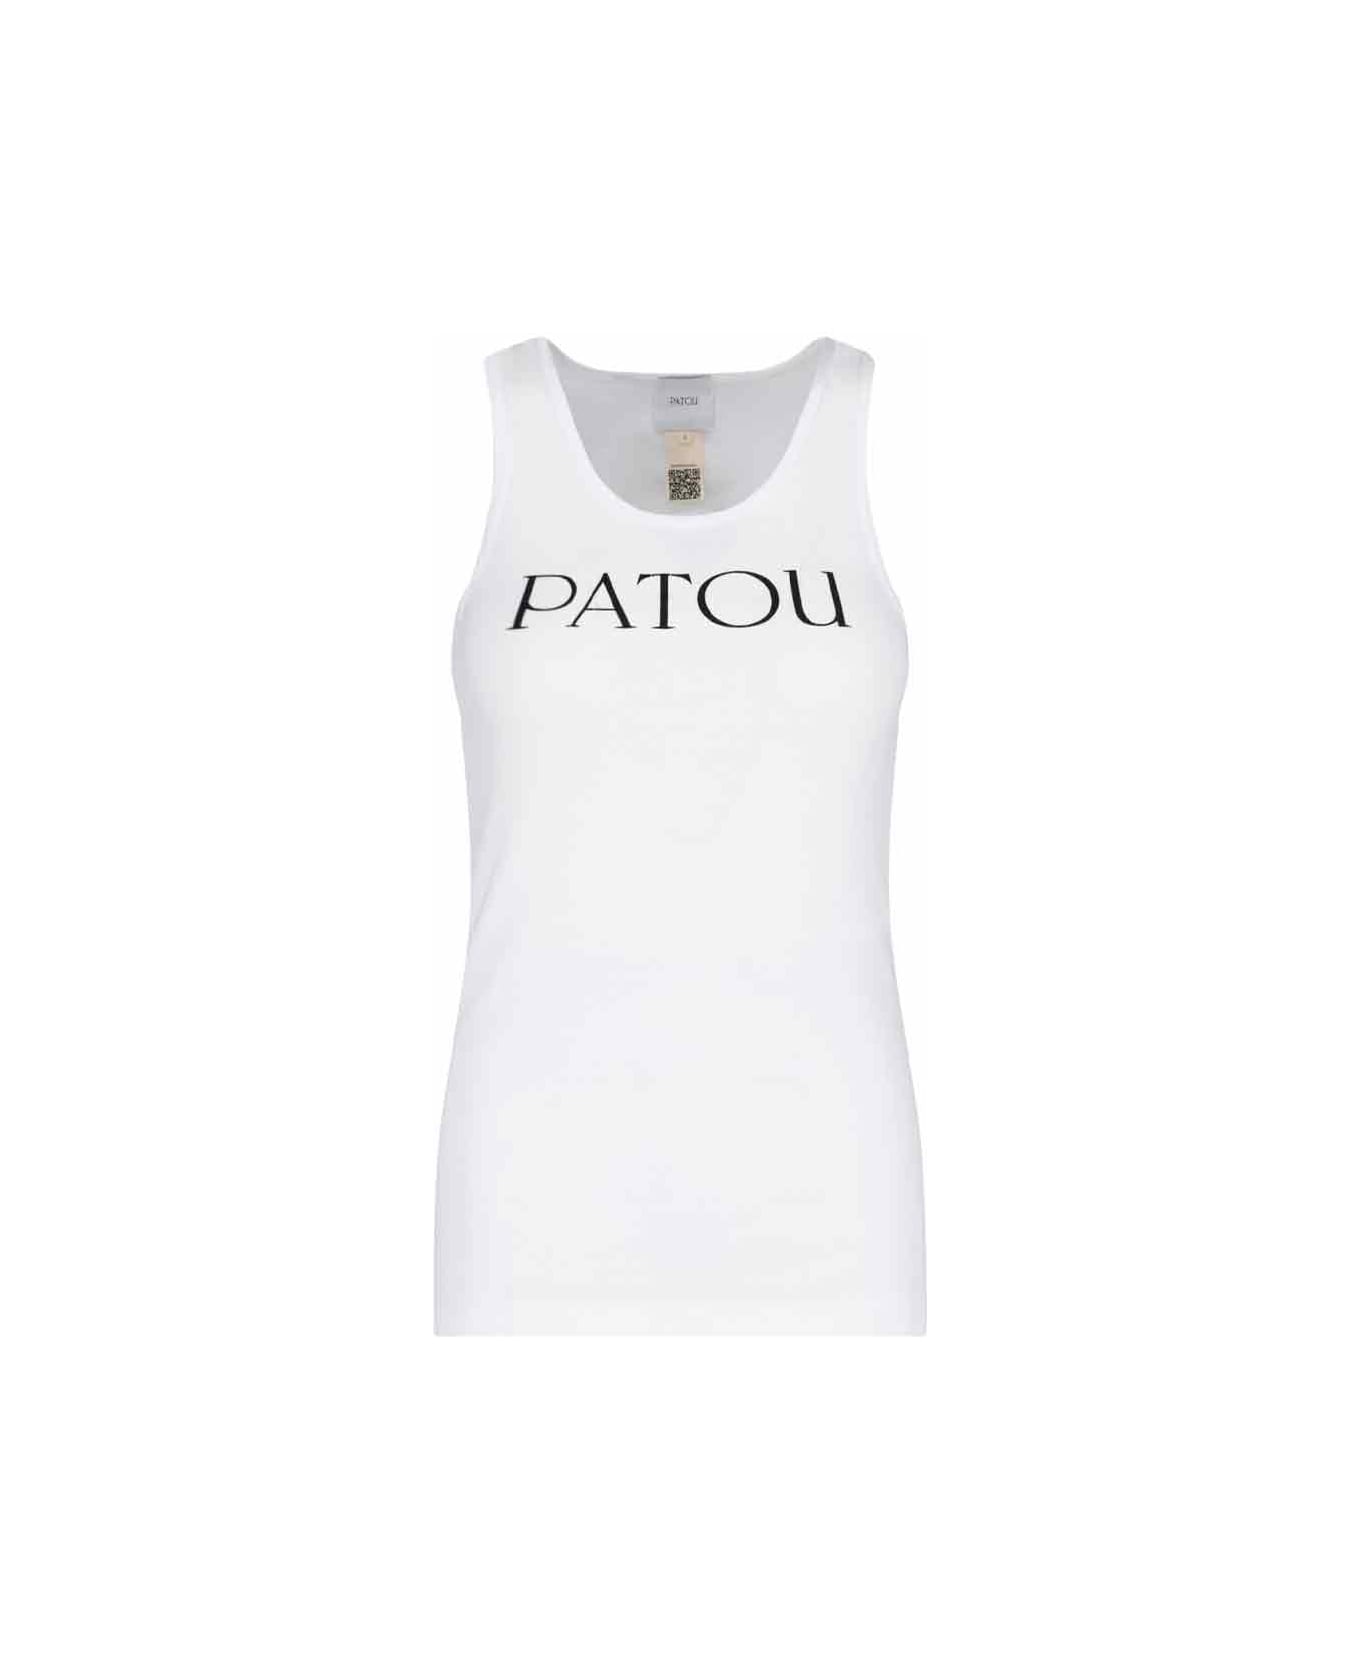 Patou Logo Top - White